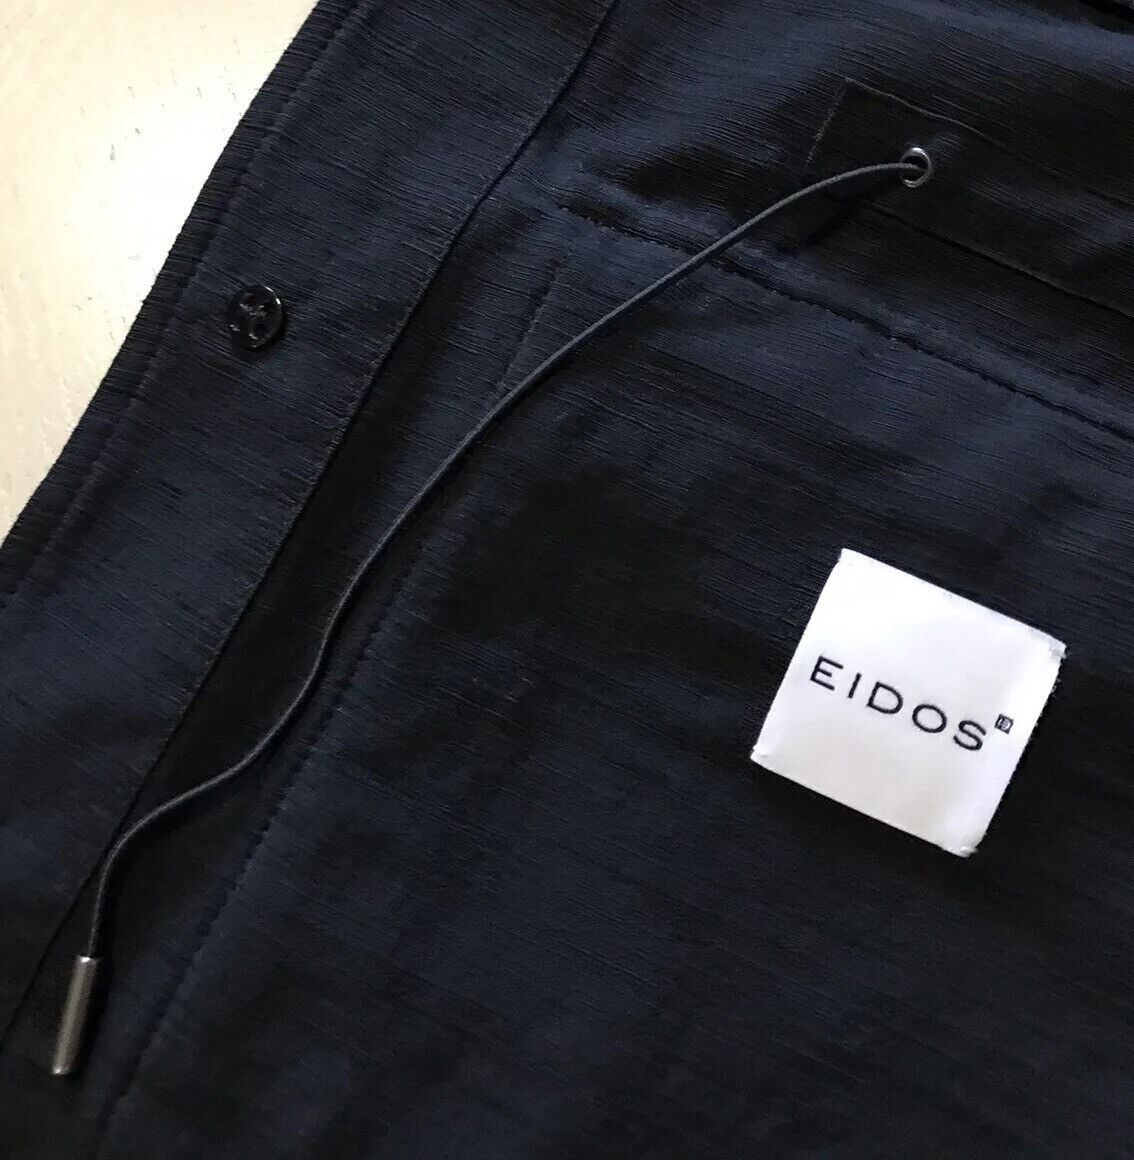 NWT $2195 Мужская стильная куртка-пальто Eidos черного цвета 38 США (48 Ei) Италия